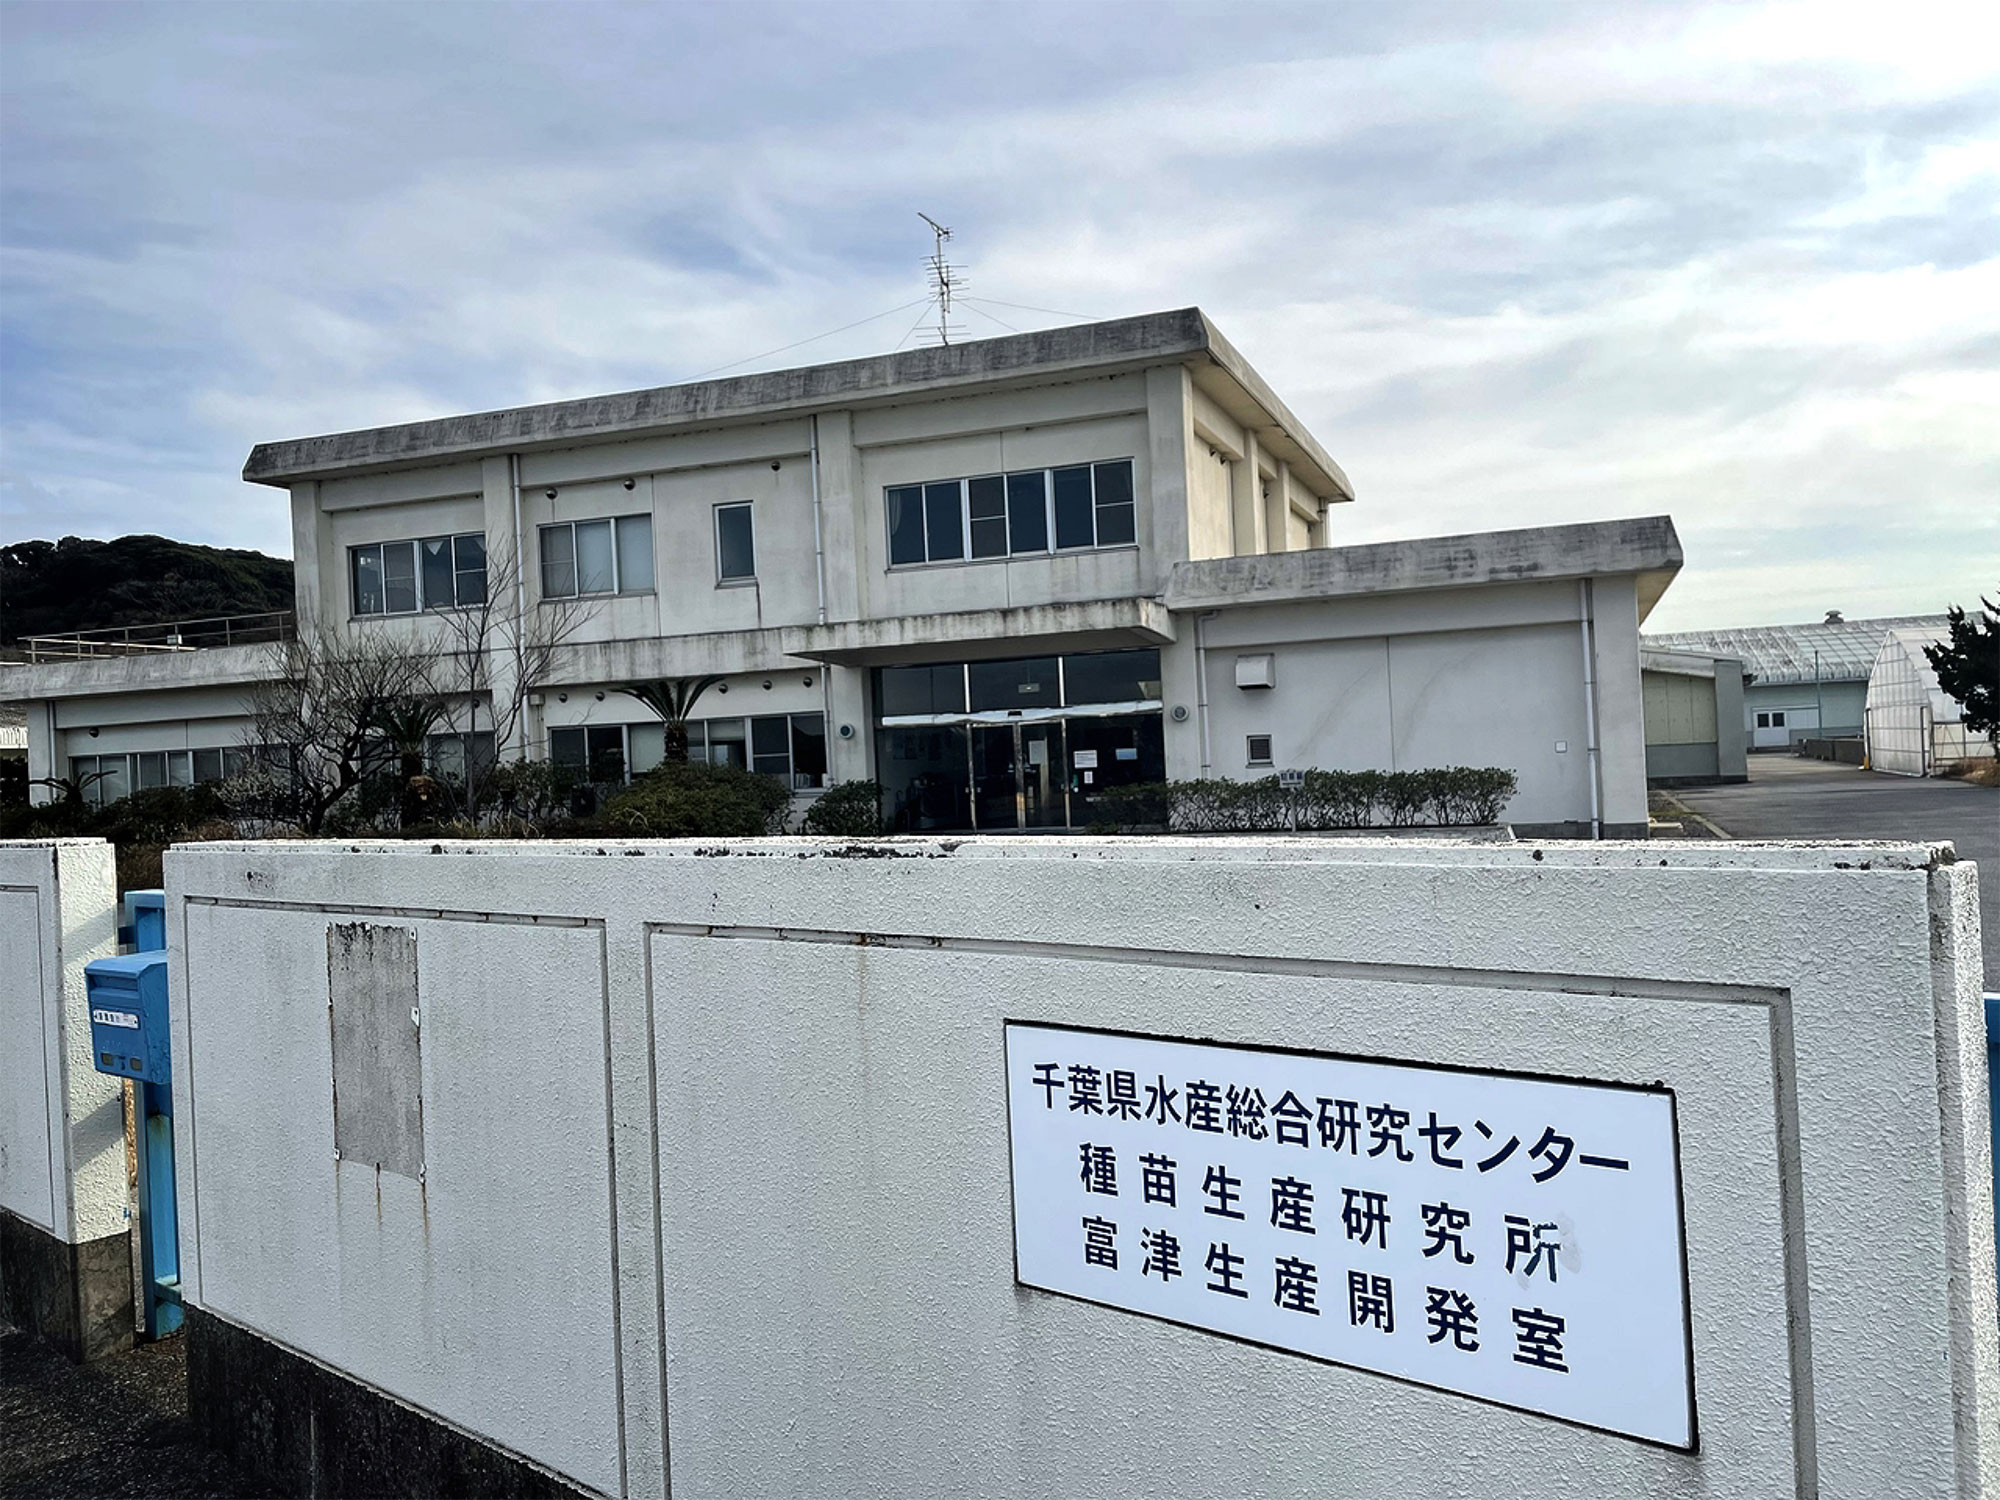 Phòng Phát triển Sản xuất Futtsu, Viện Nghiên cứu Sản xuất giống, Trung tâm Nghiên cứu Tổng hợp Thủy sản tỉnh Chiba